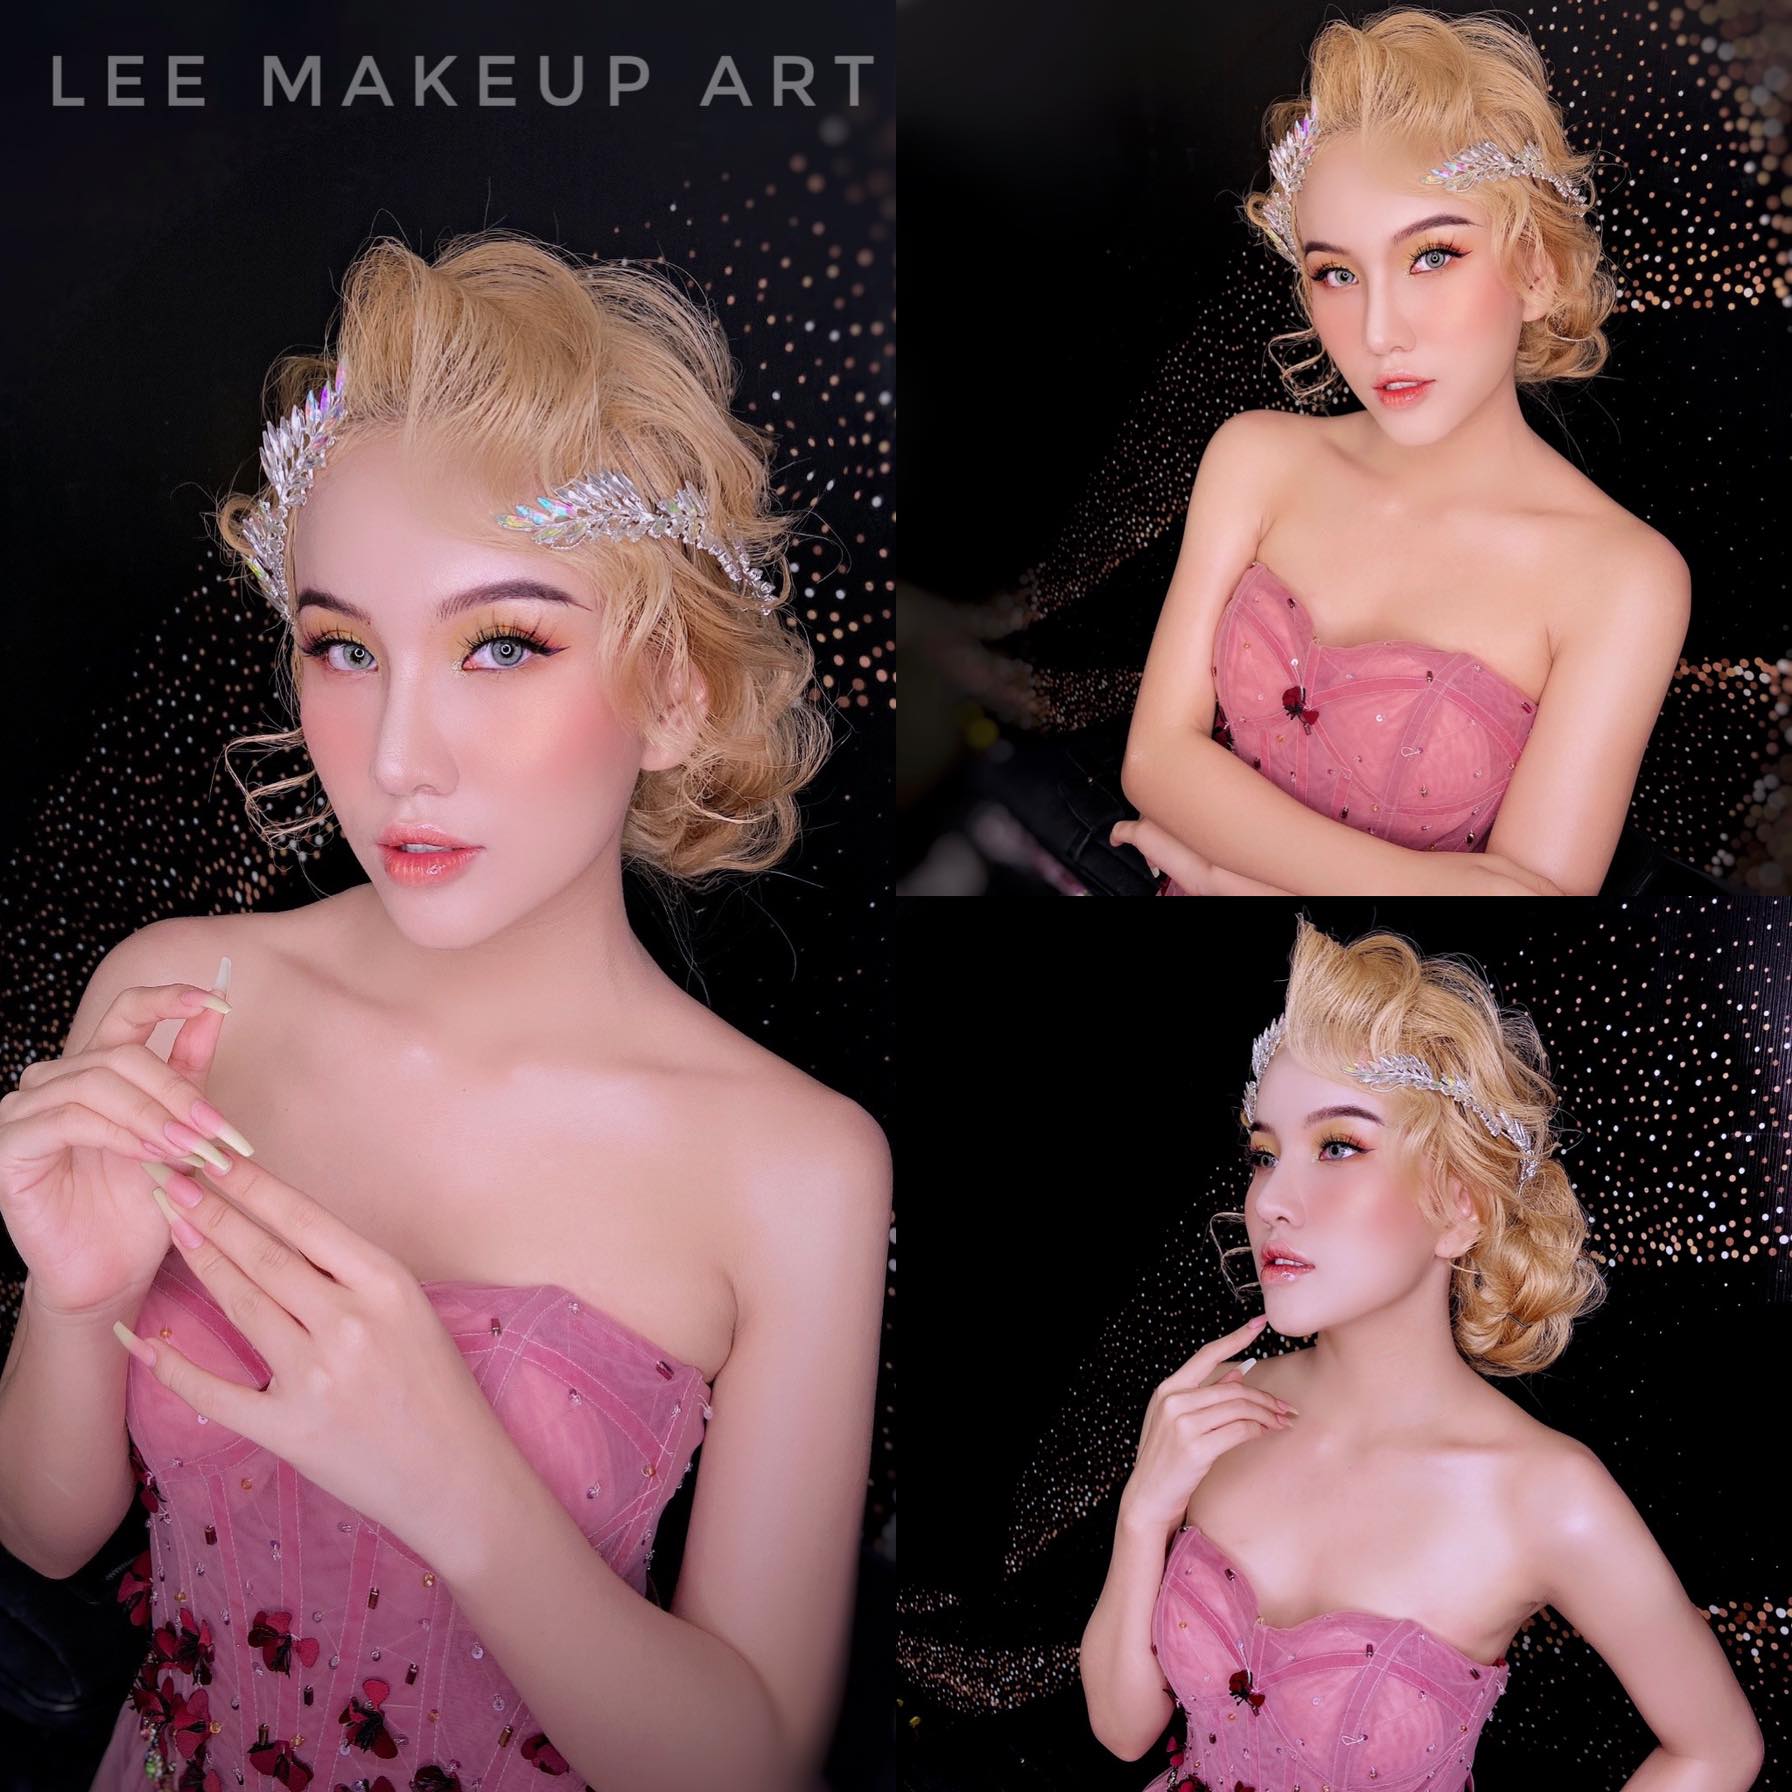 Top 7 tiệm trang điểm cô dâu đẹp nhất tại Đồng Nai -  Thi Lee Makeup